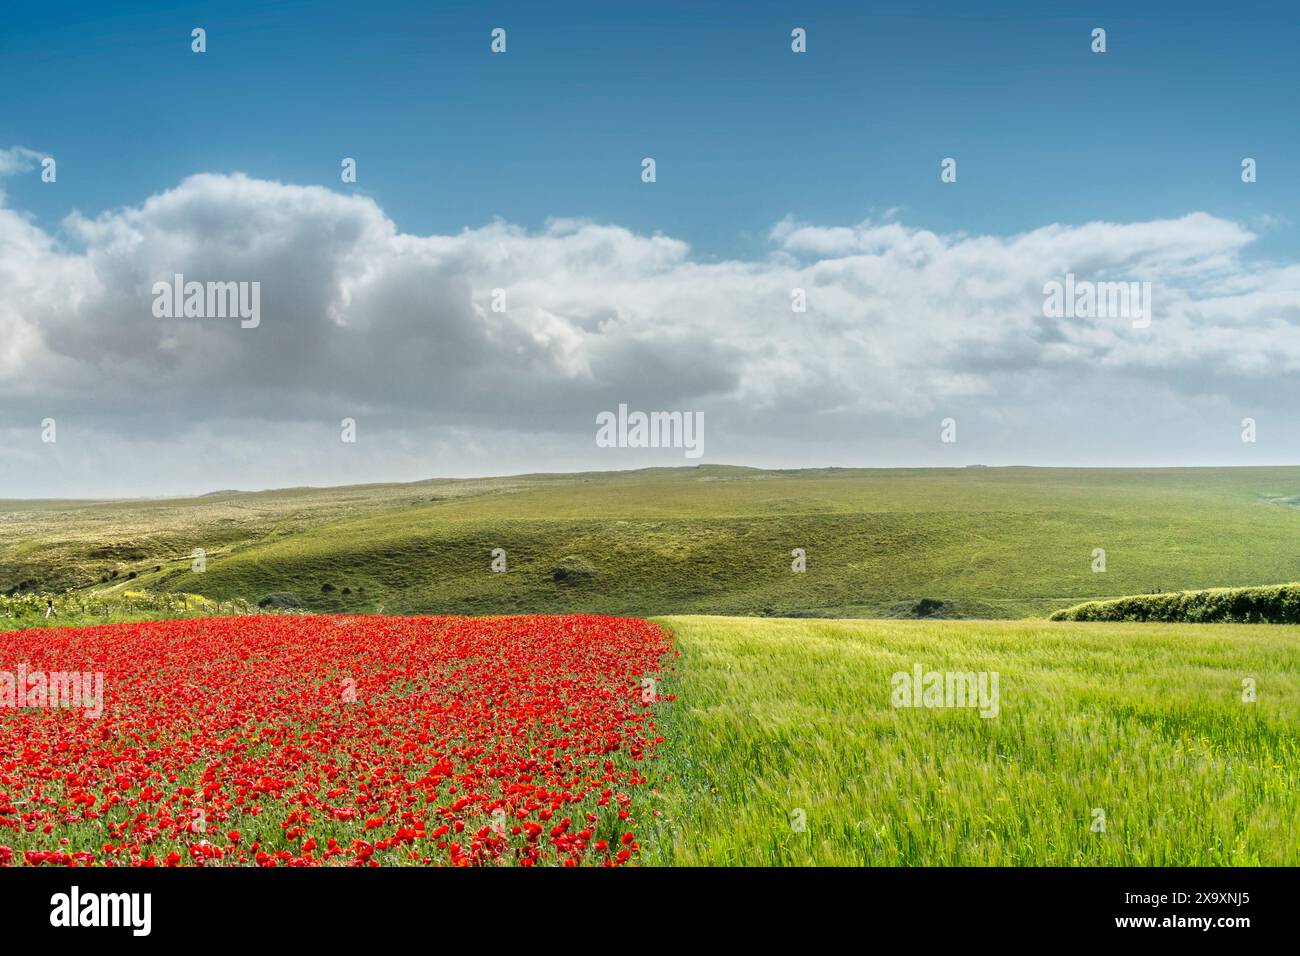 La vue spectaculaire d'un champ avec une moitié semée de belles fleurs de pavot et l'autre moitié avec de l'orge sur West Pwhole à Newquay en Cornouailles. Banque D'Images